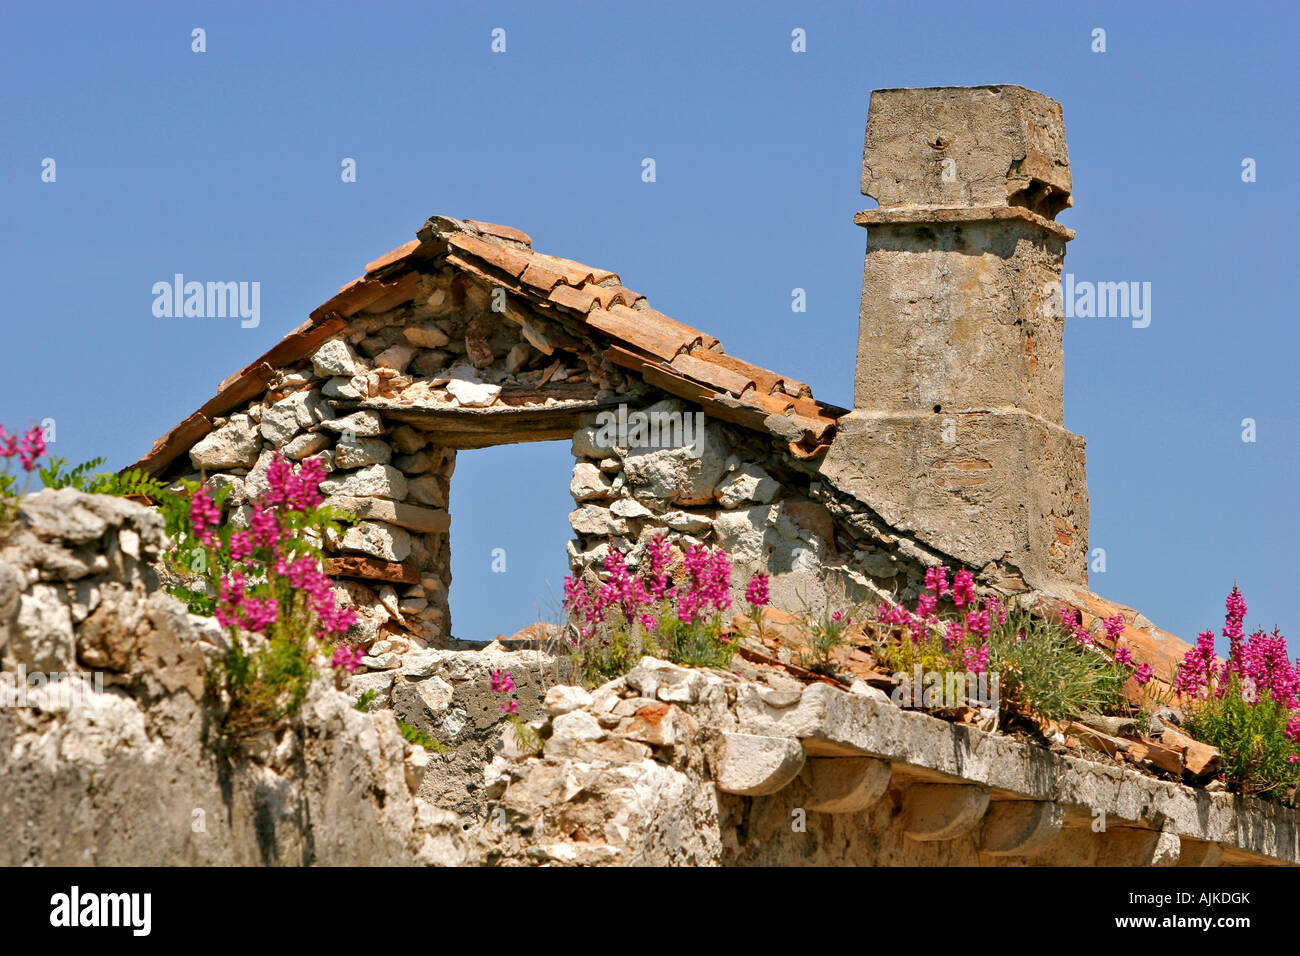 Wildblumen auf einer Ruine auf der Insel Premuda | Wildflowers on a ruin on the Isle Premuda Stock Photo